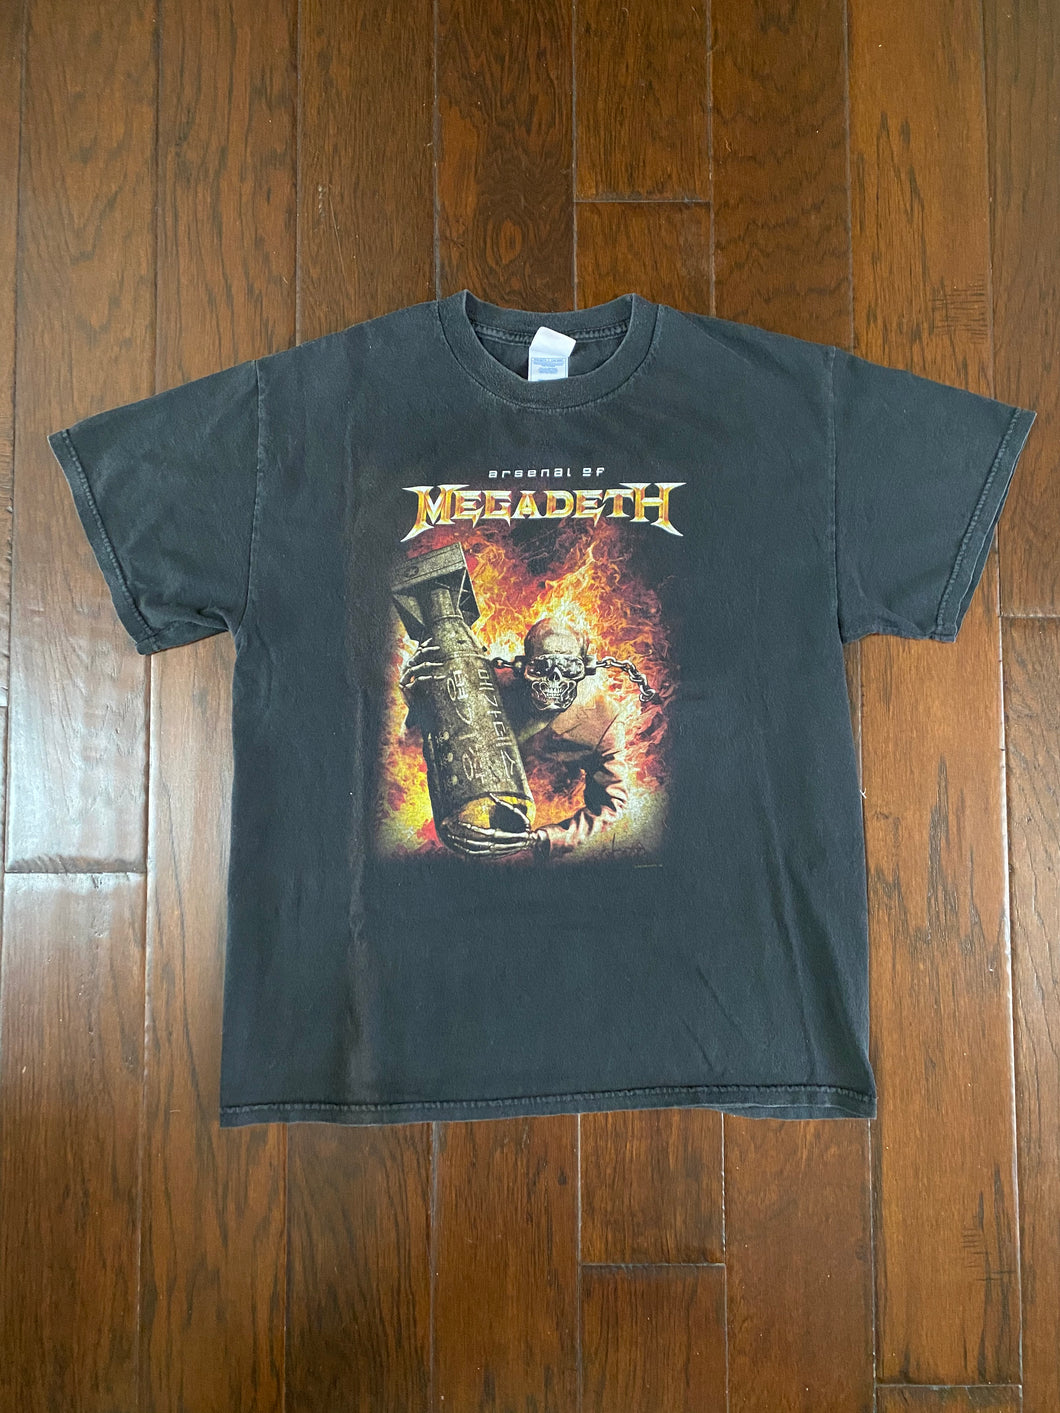 Megadeth 2005 “Arsenal Of Megadeth” Vintage Distressed T-shirt